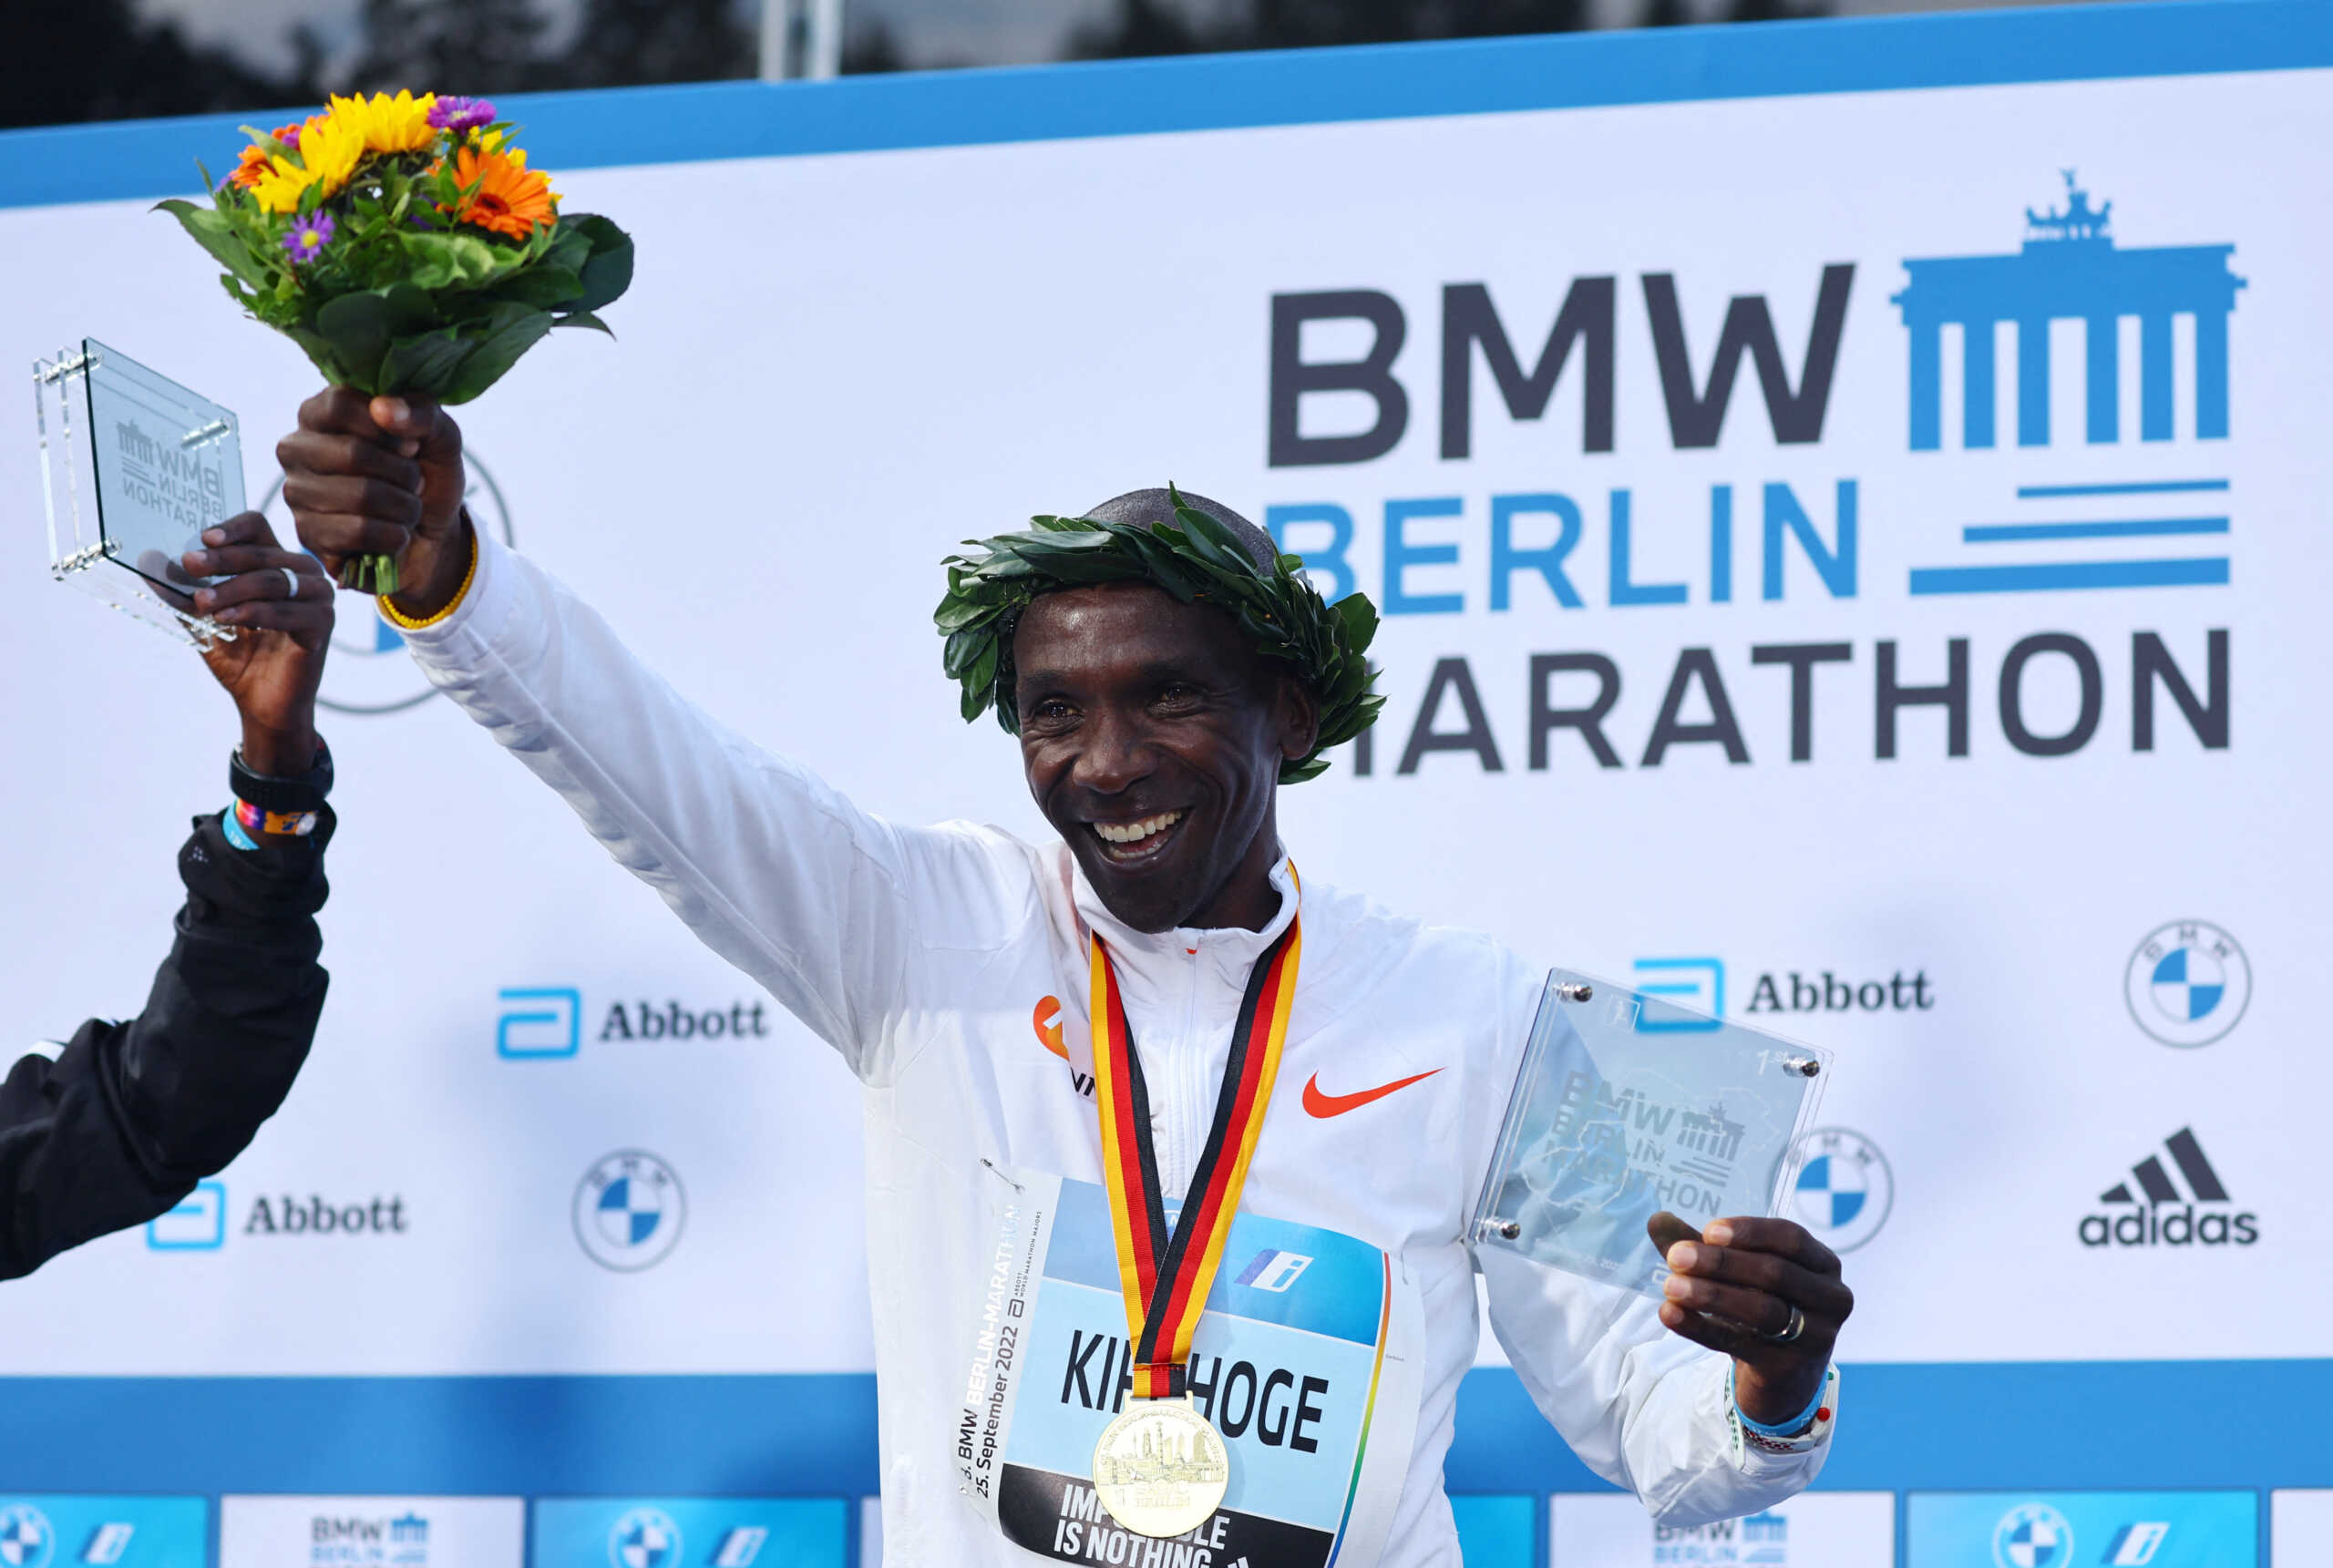 Ο Κιπτσόγκε έκανε νέο παγκόσμιο ρεκόρ στον Μαραθώνιο του Βερολίνου